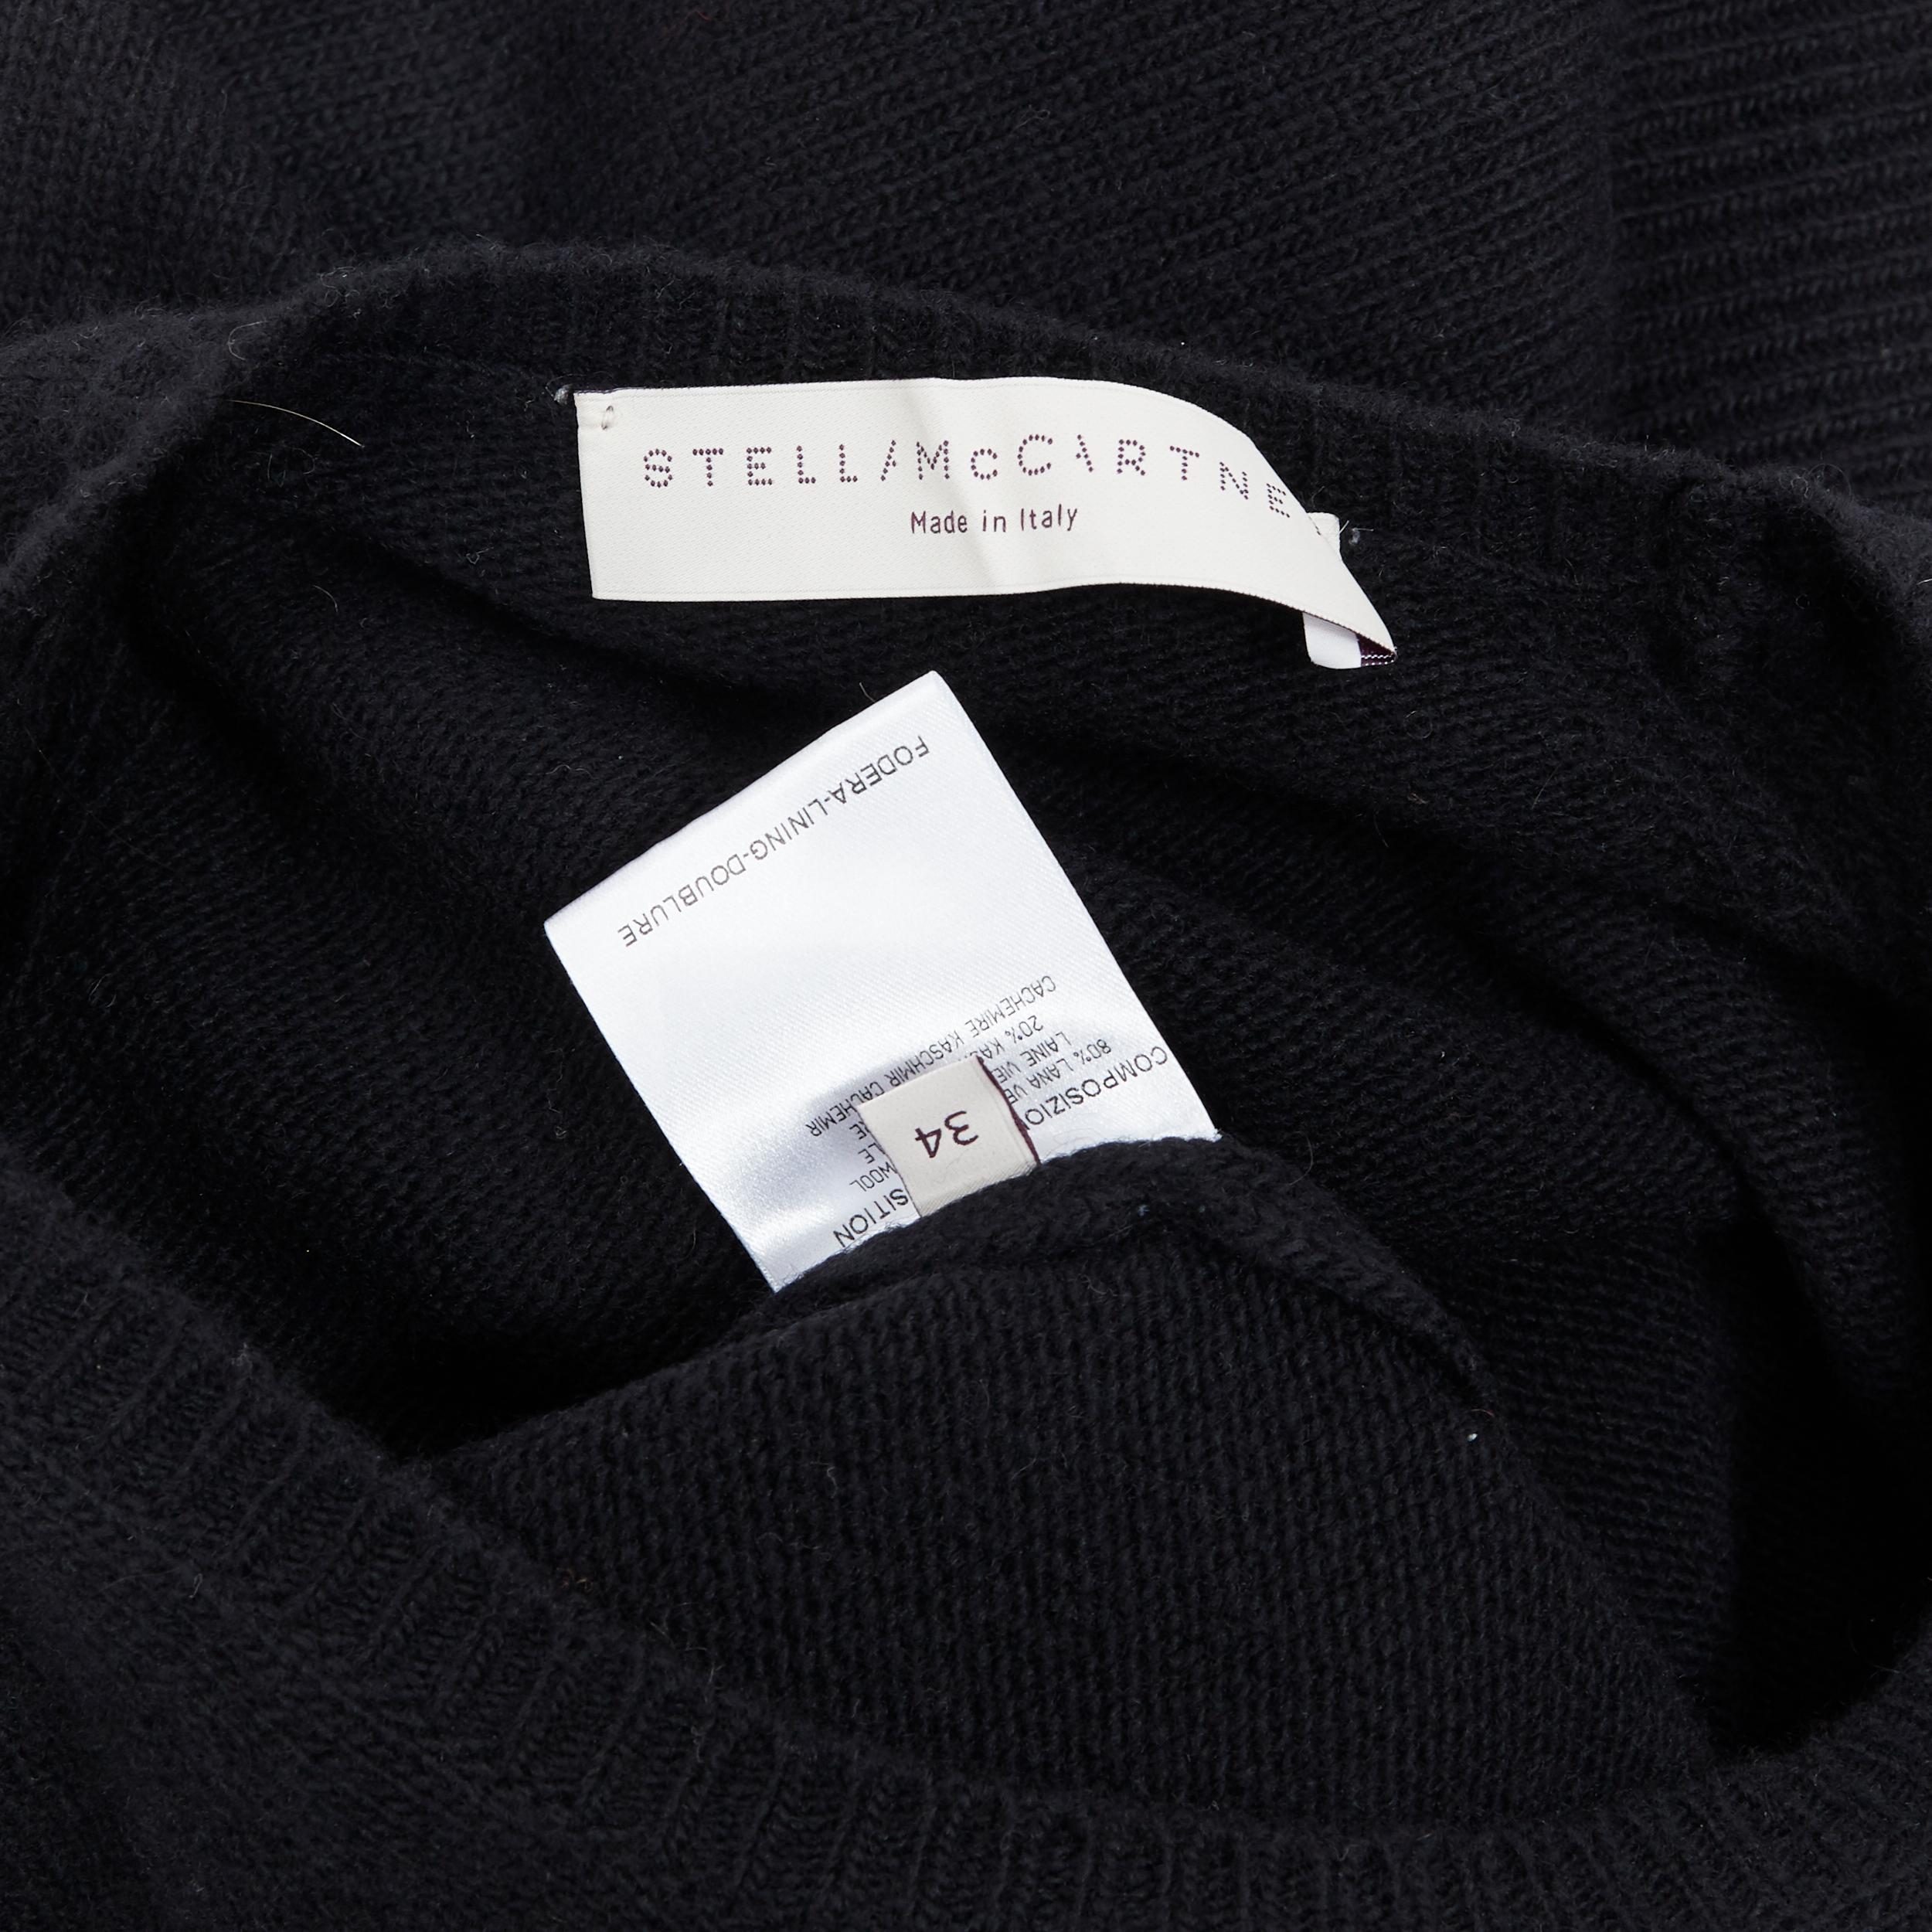 STELLA MCCARTNEY 2010 fleece wool cashmere blend long sleeve sweater IT34 XS 1